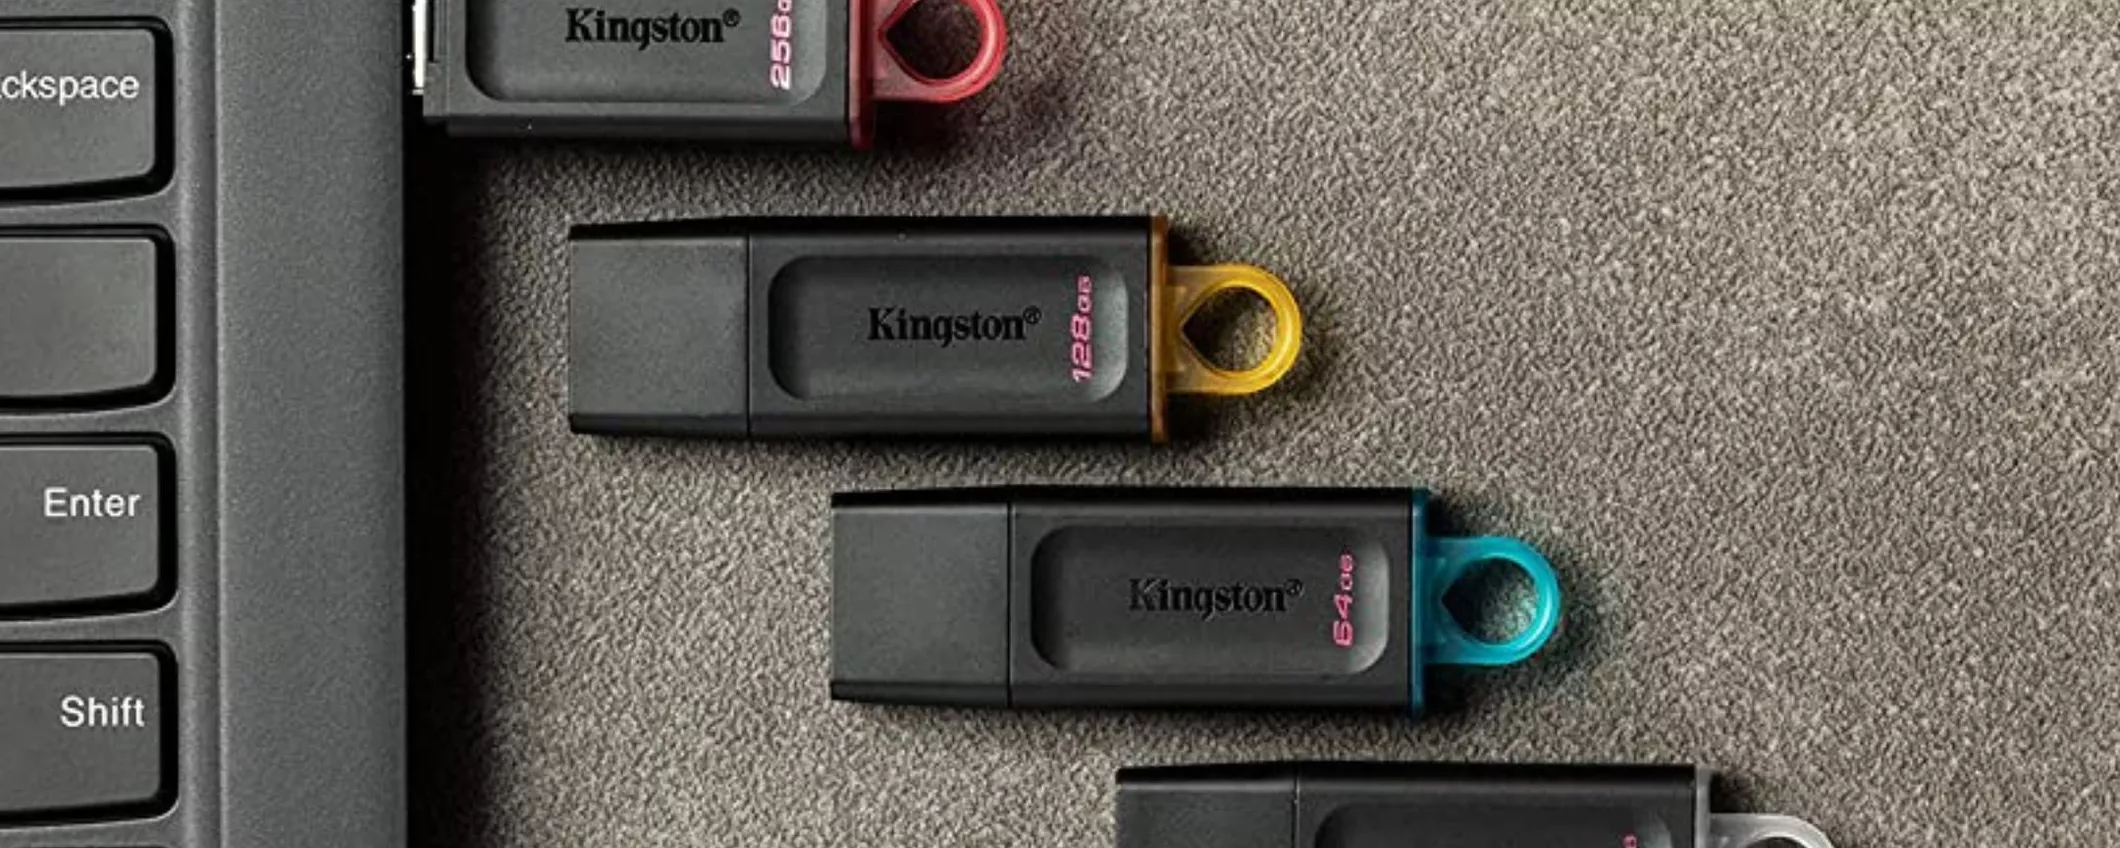 CHE PREZZO: solamente 8€ per Chiavetta USB da 128GB della Kingston